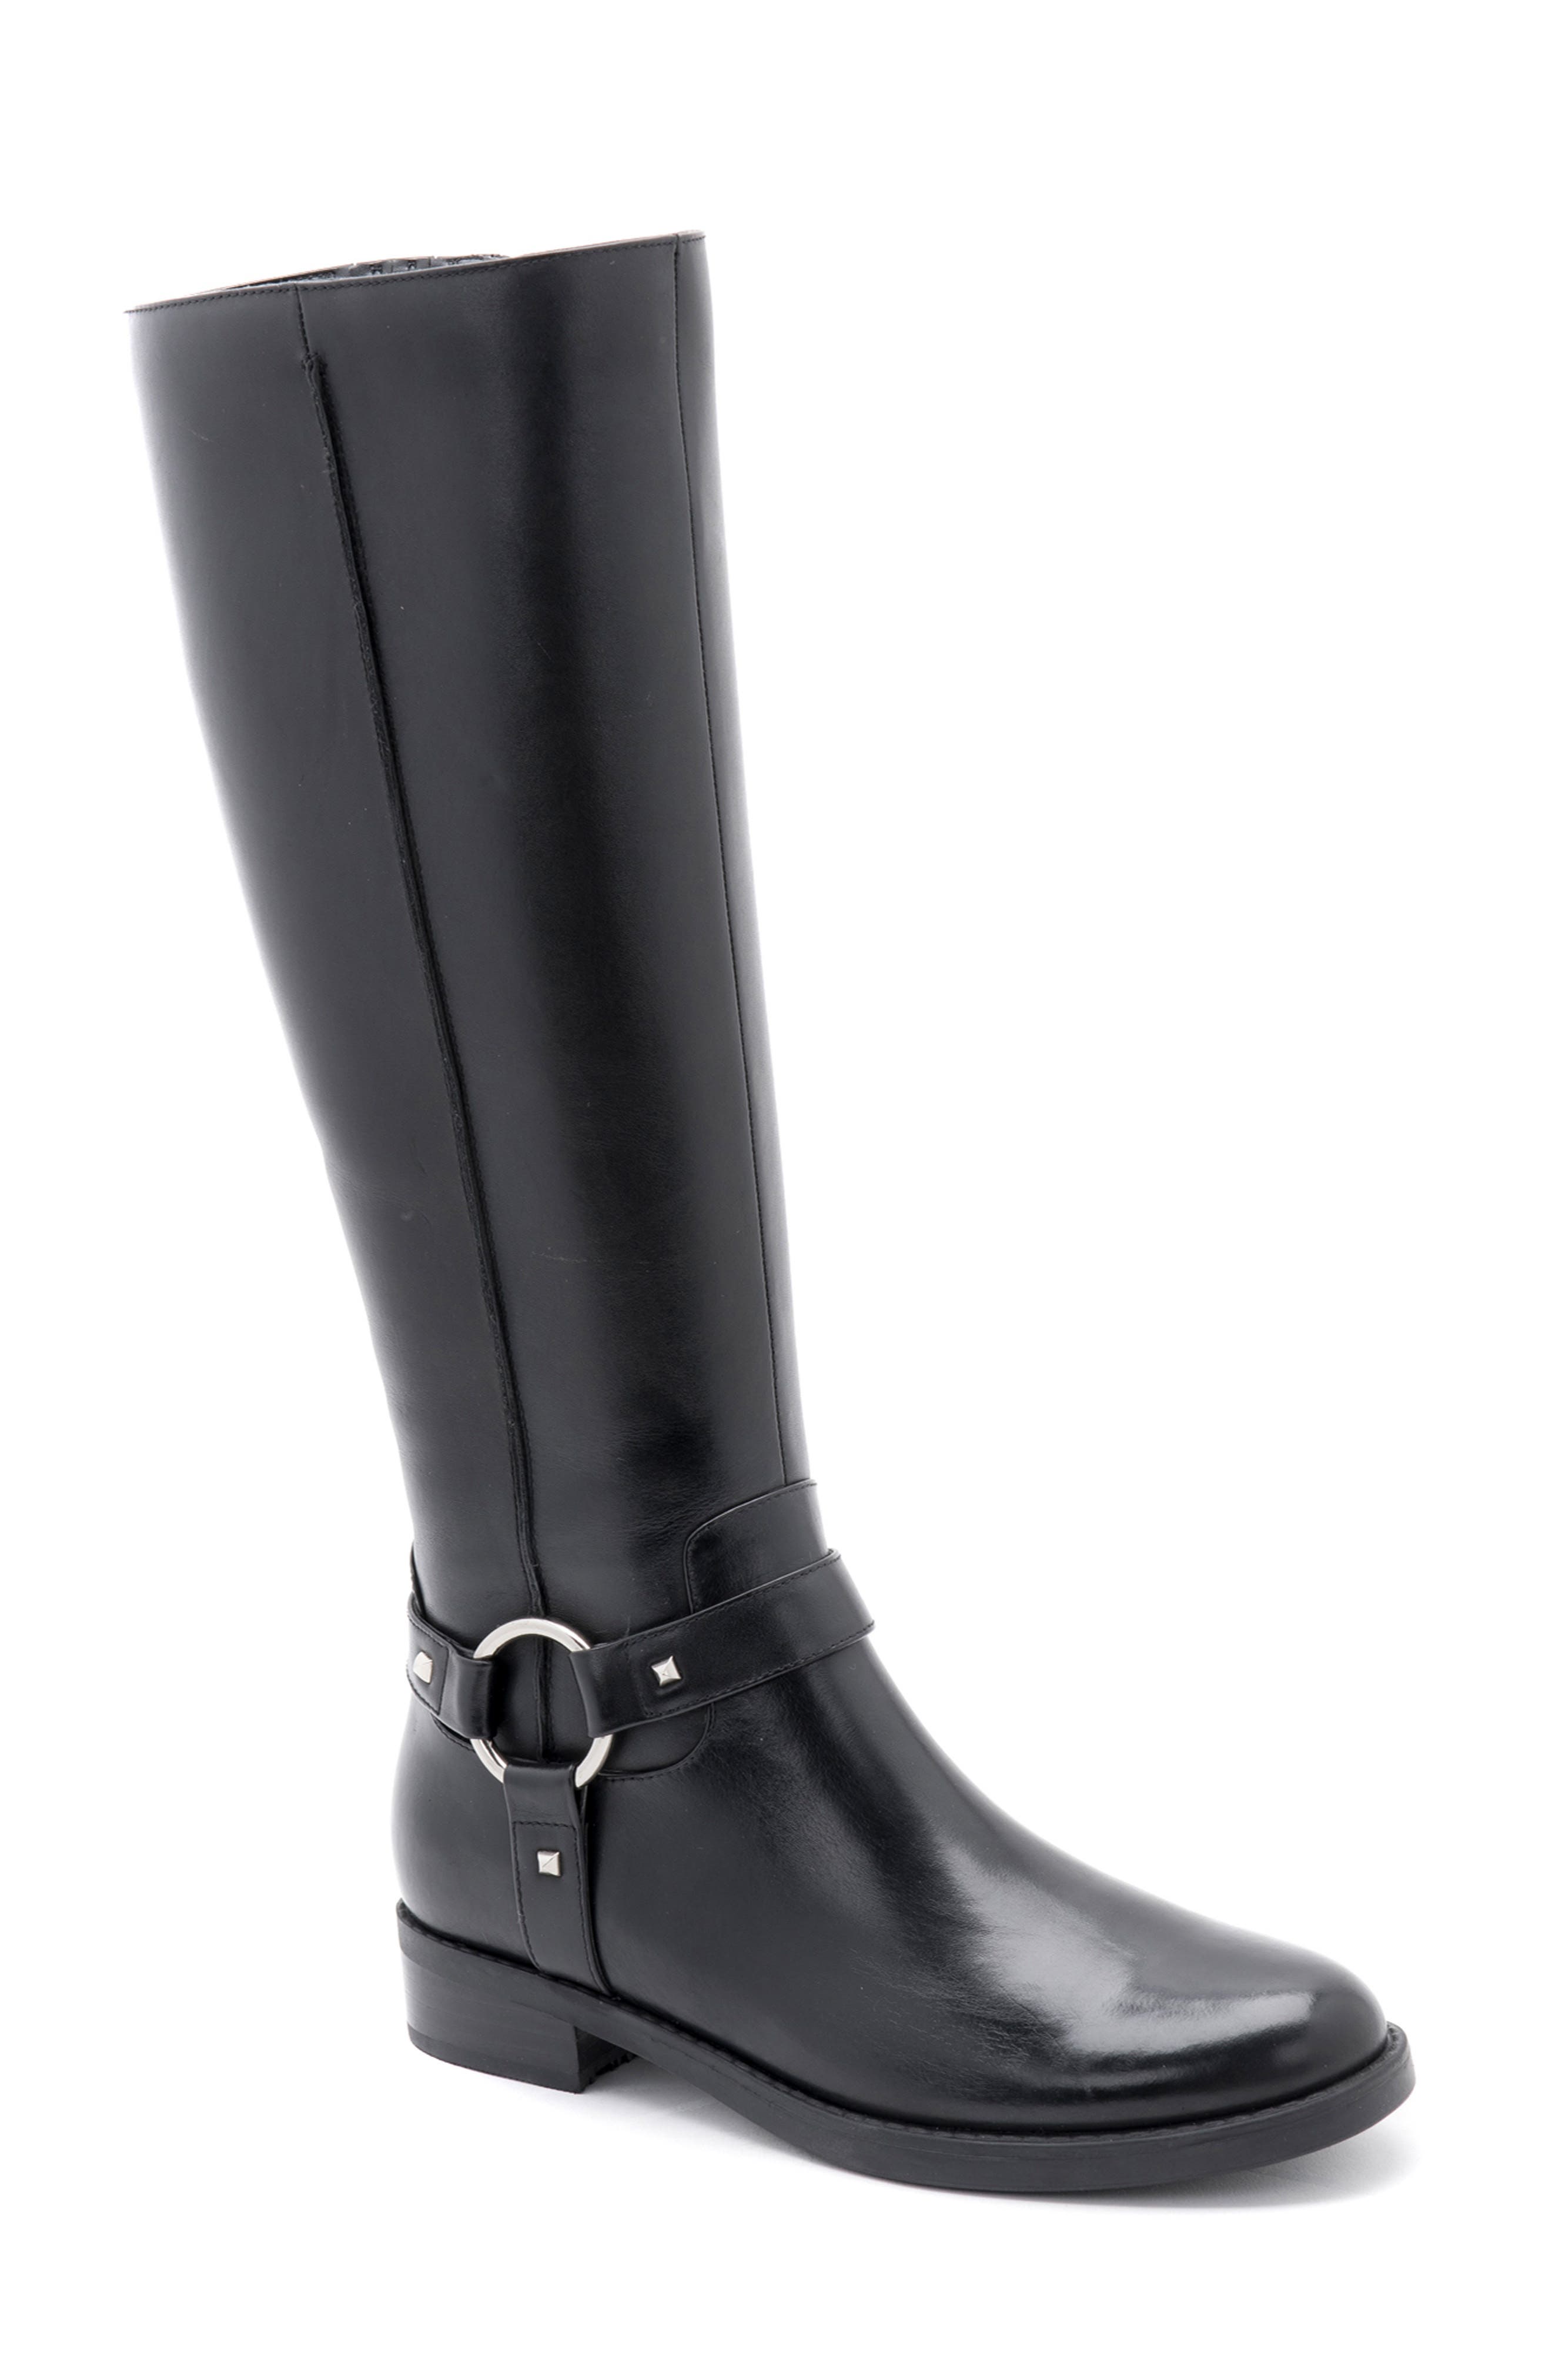 blondo women's waterproof boots